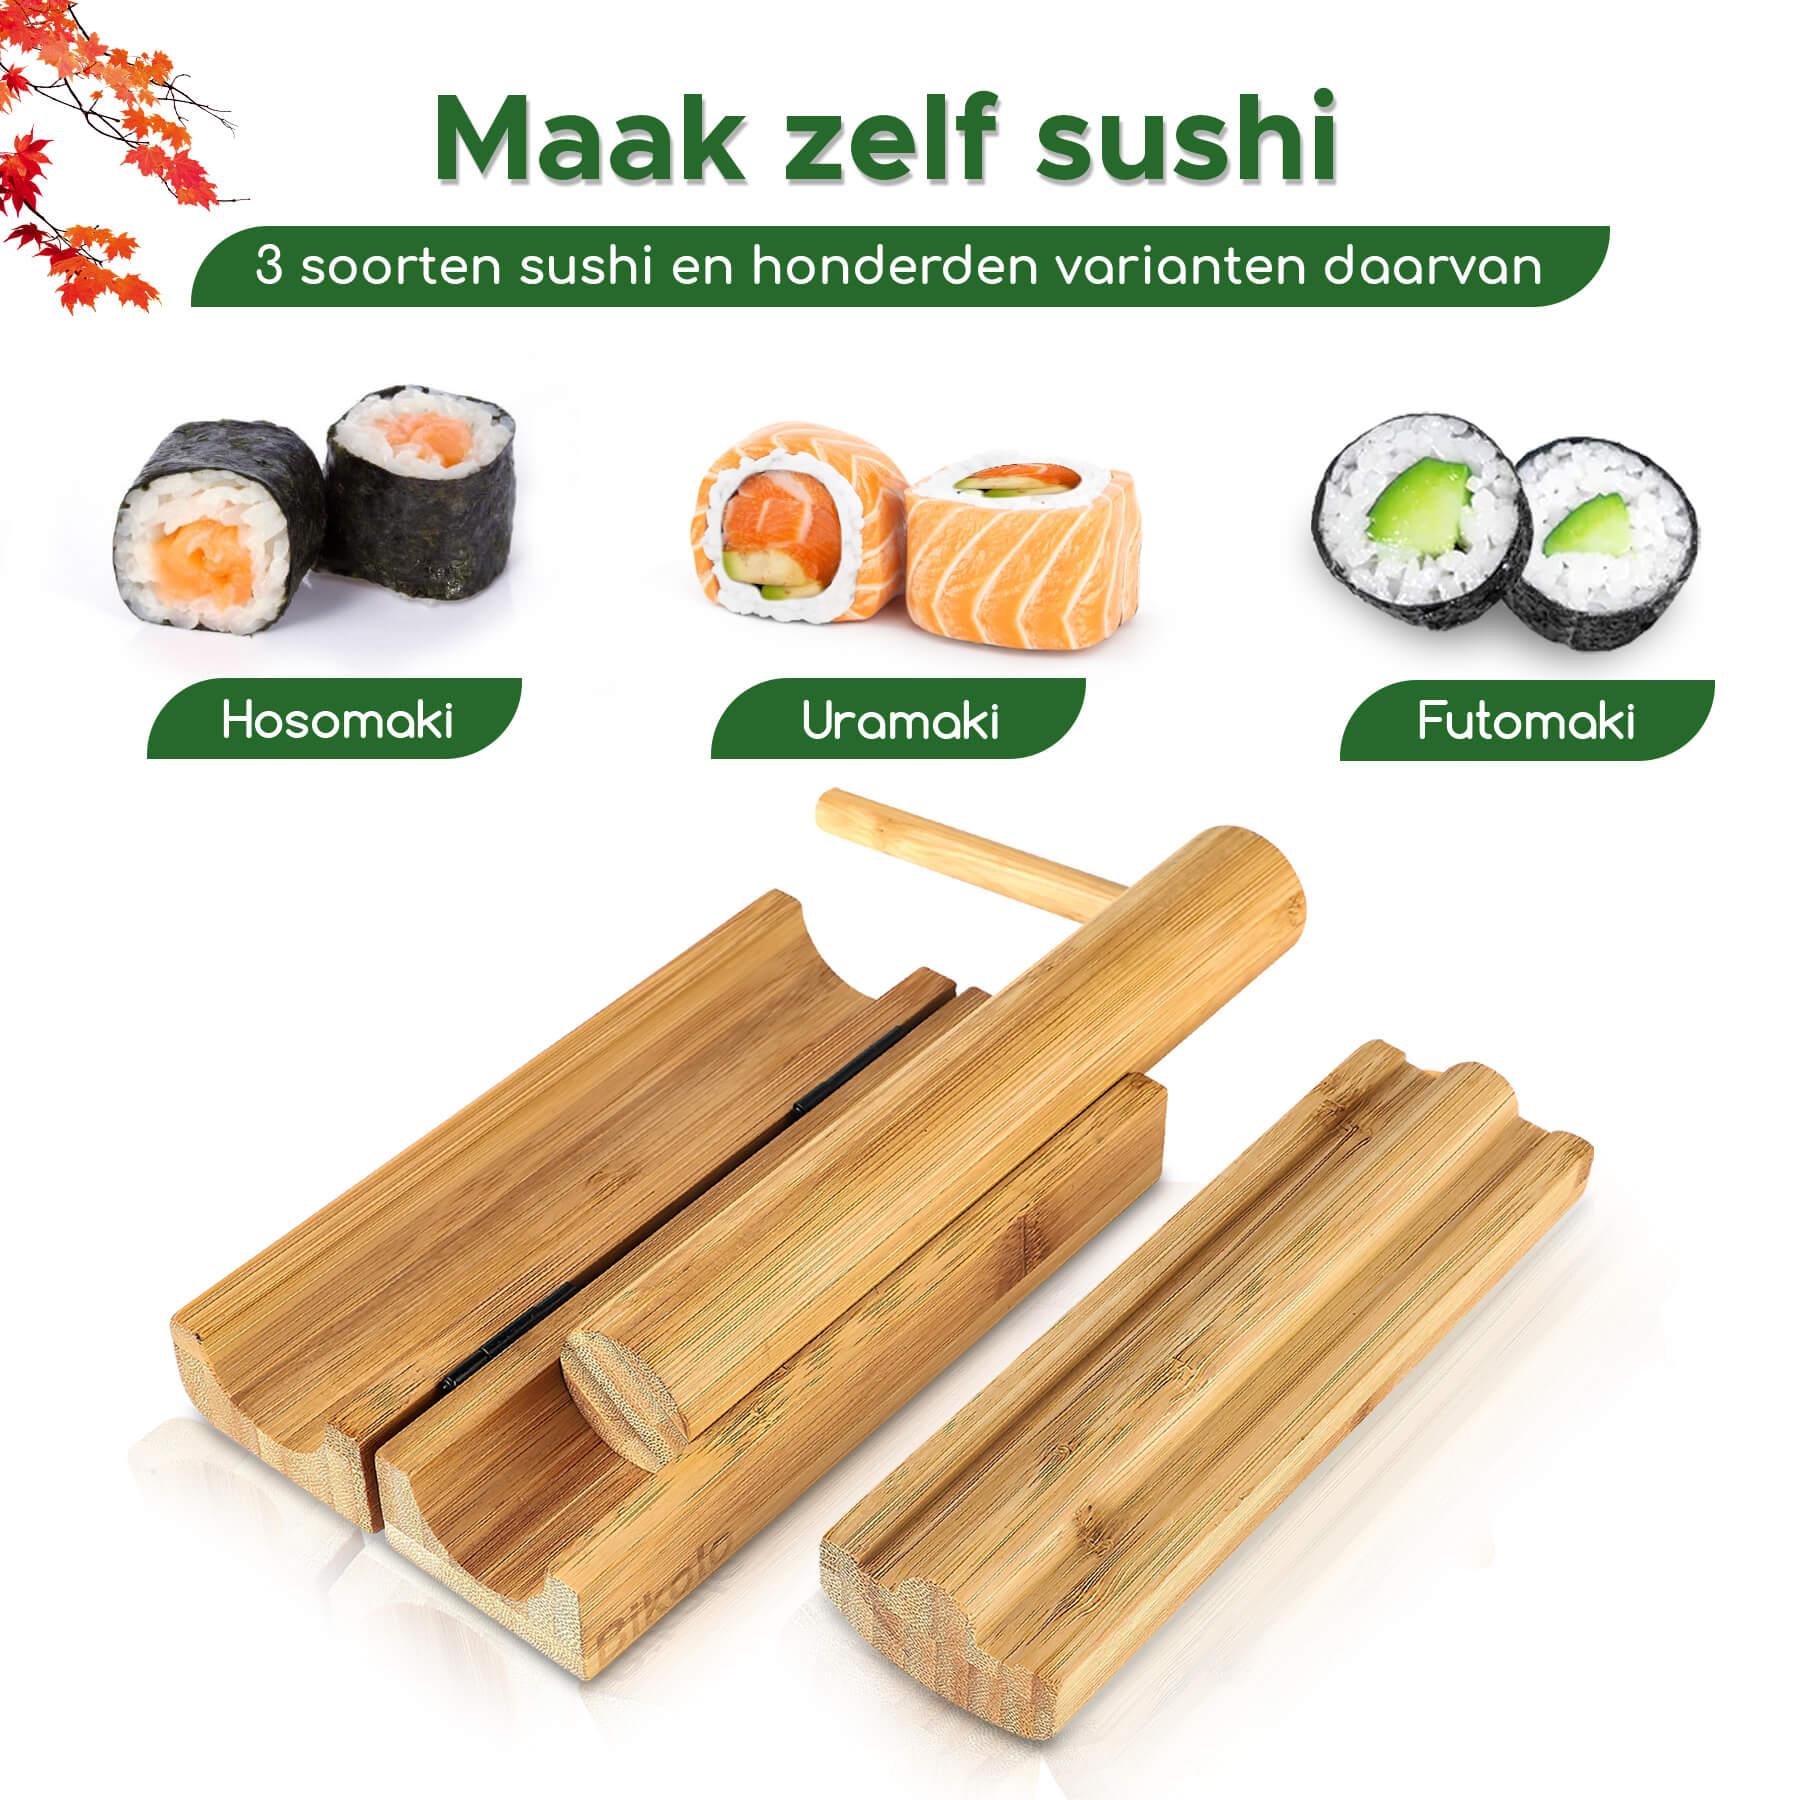 sushi maker van bamboe hout om vele soorten sushi mee te maken